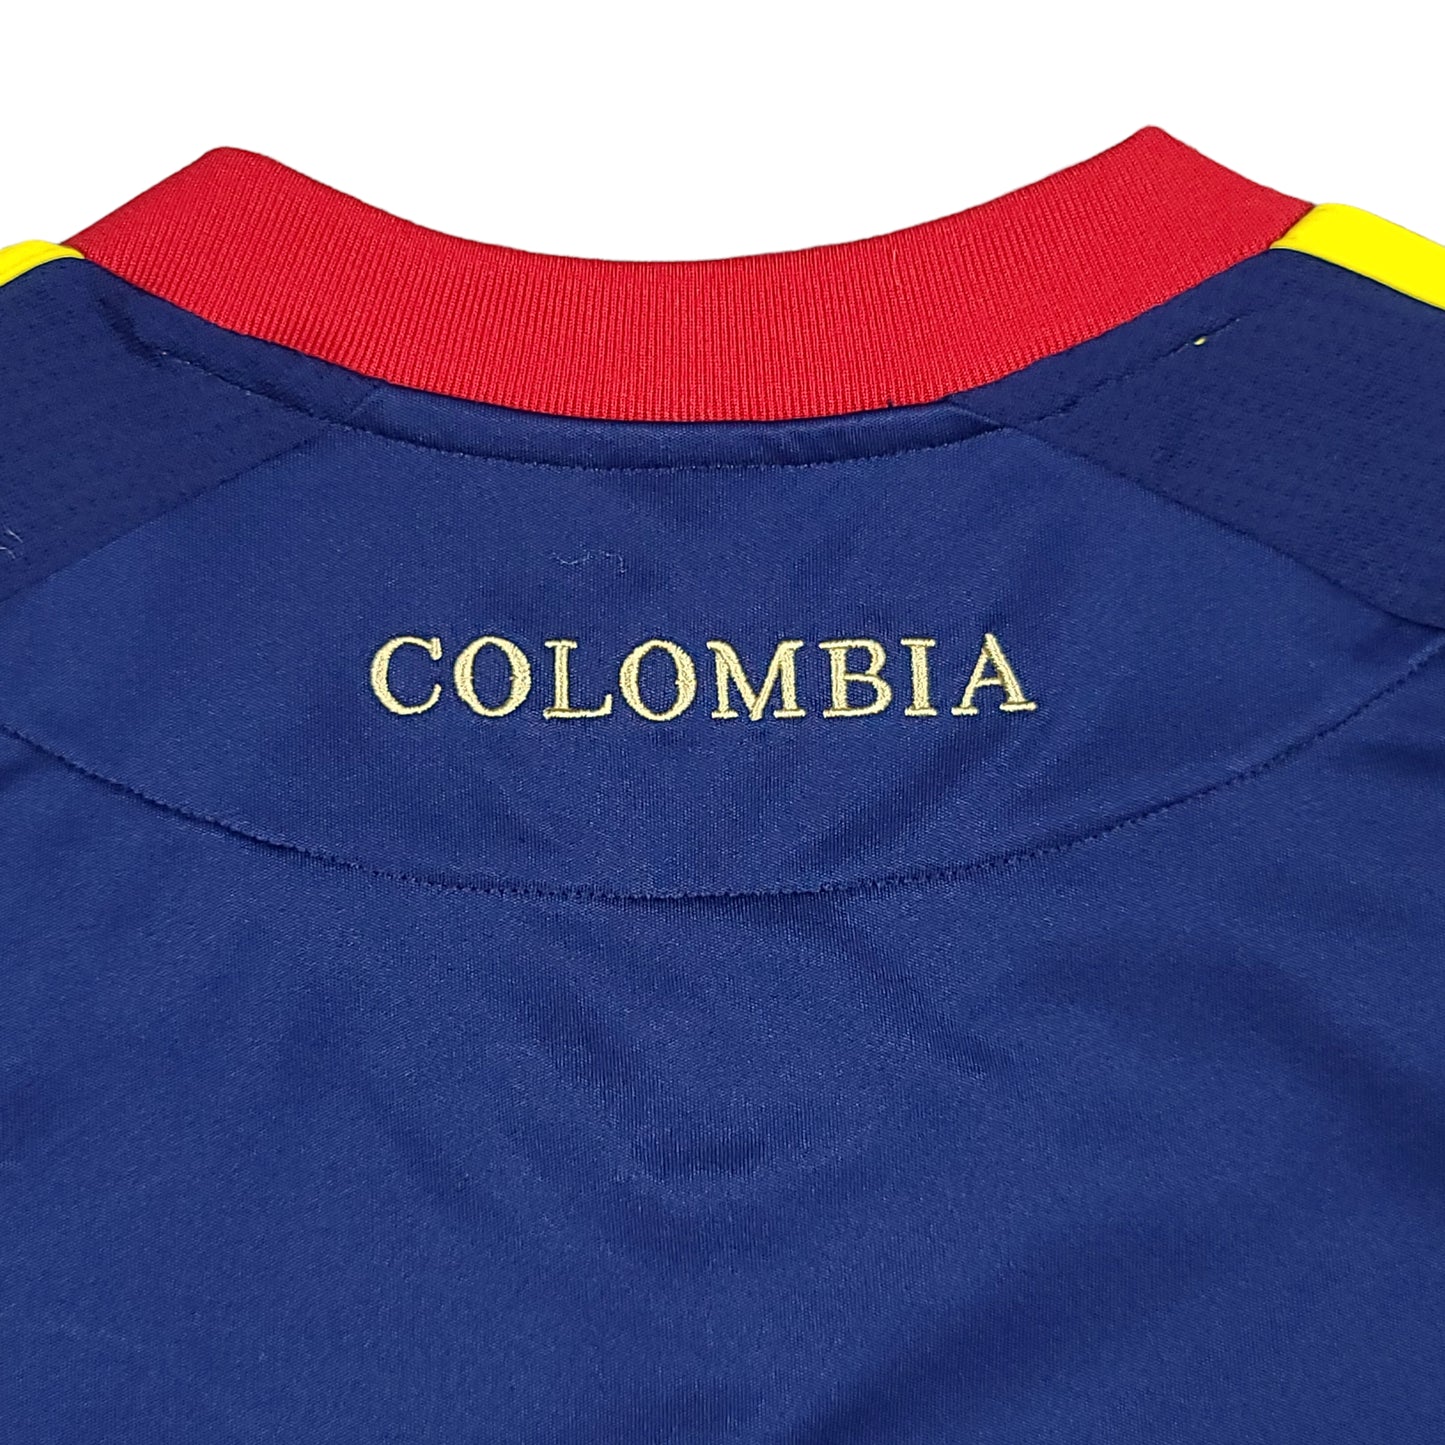 Columbia 2011 Navy Blue adidas Away Jersey